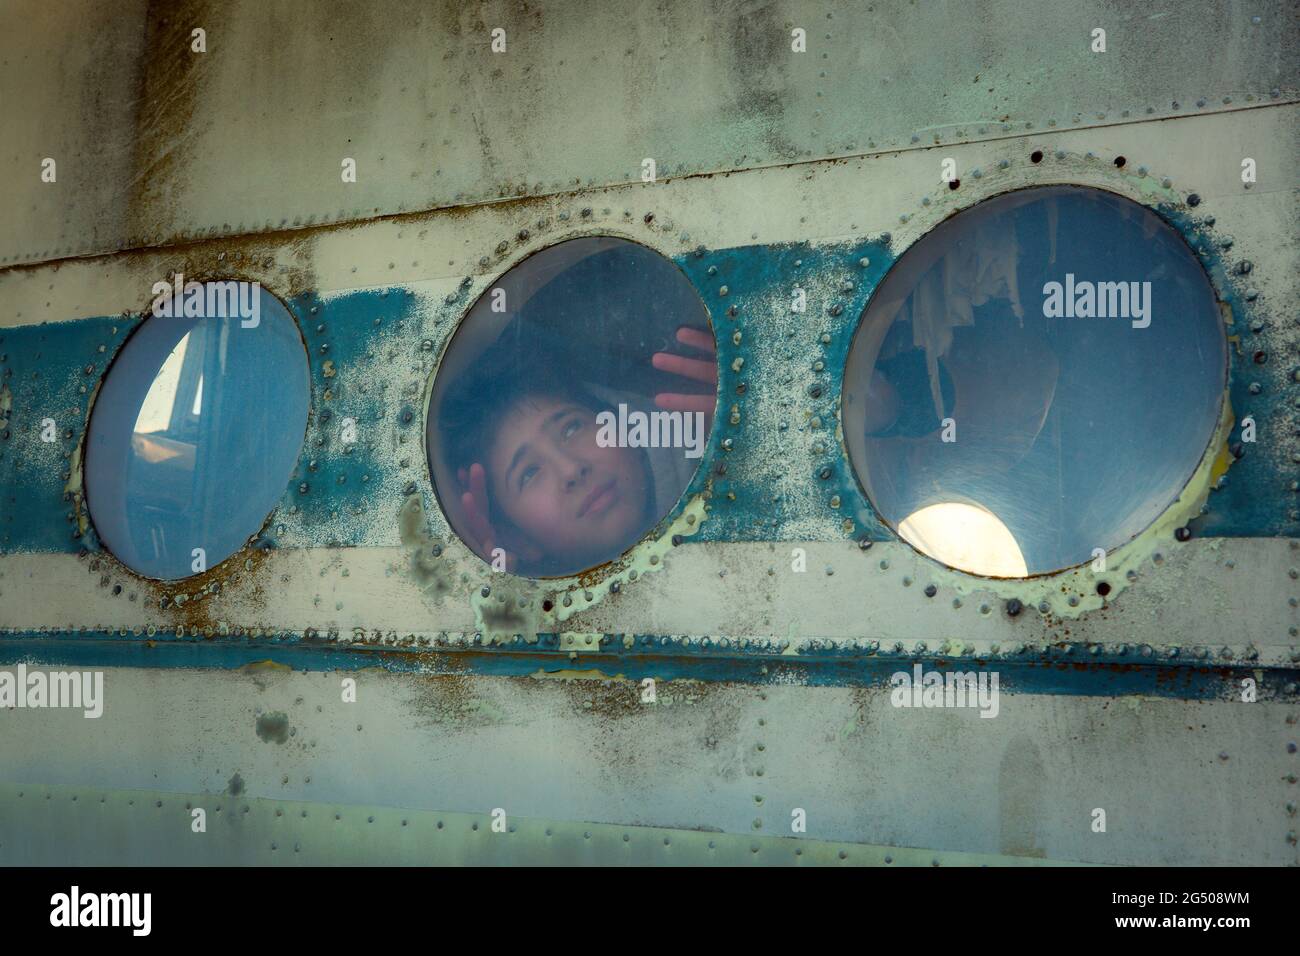 Un jeune homme à bord d'un ancien avion soviétique abandonné. Le gars regarde la fenêtre. Banque D'Images